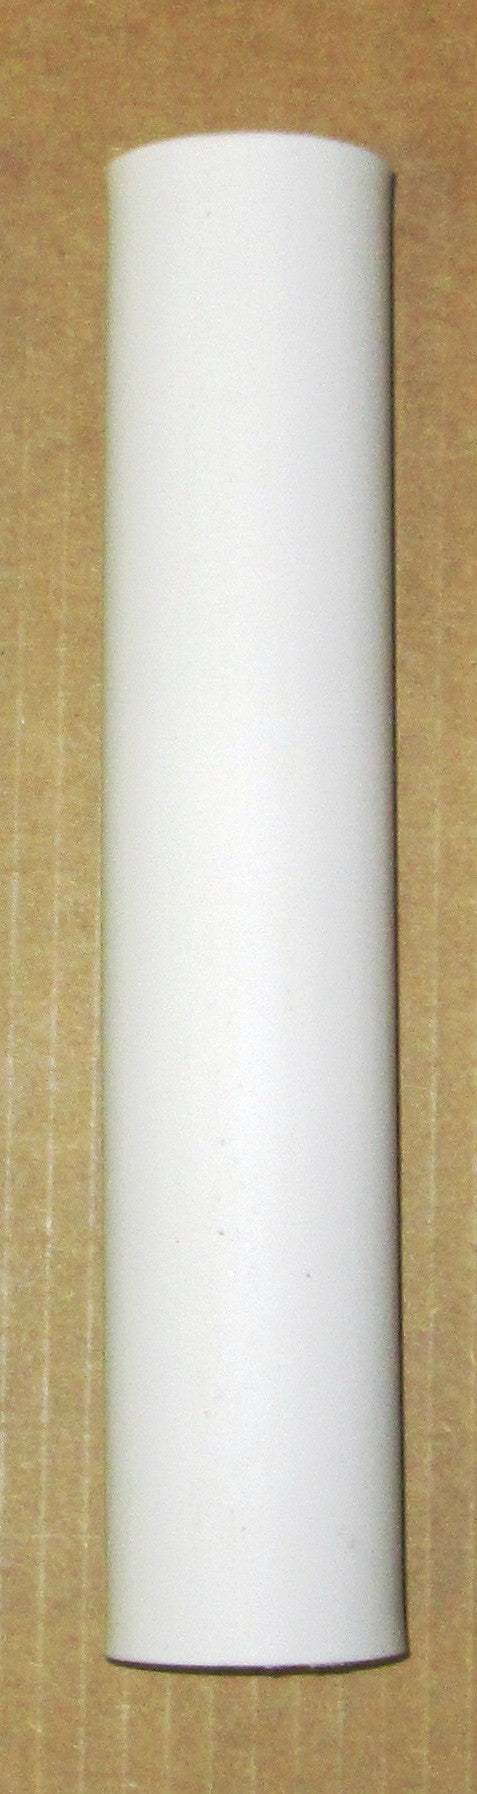 Large Vinyl Rod Holder Liner